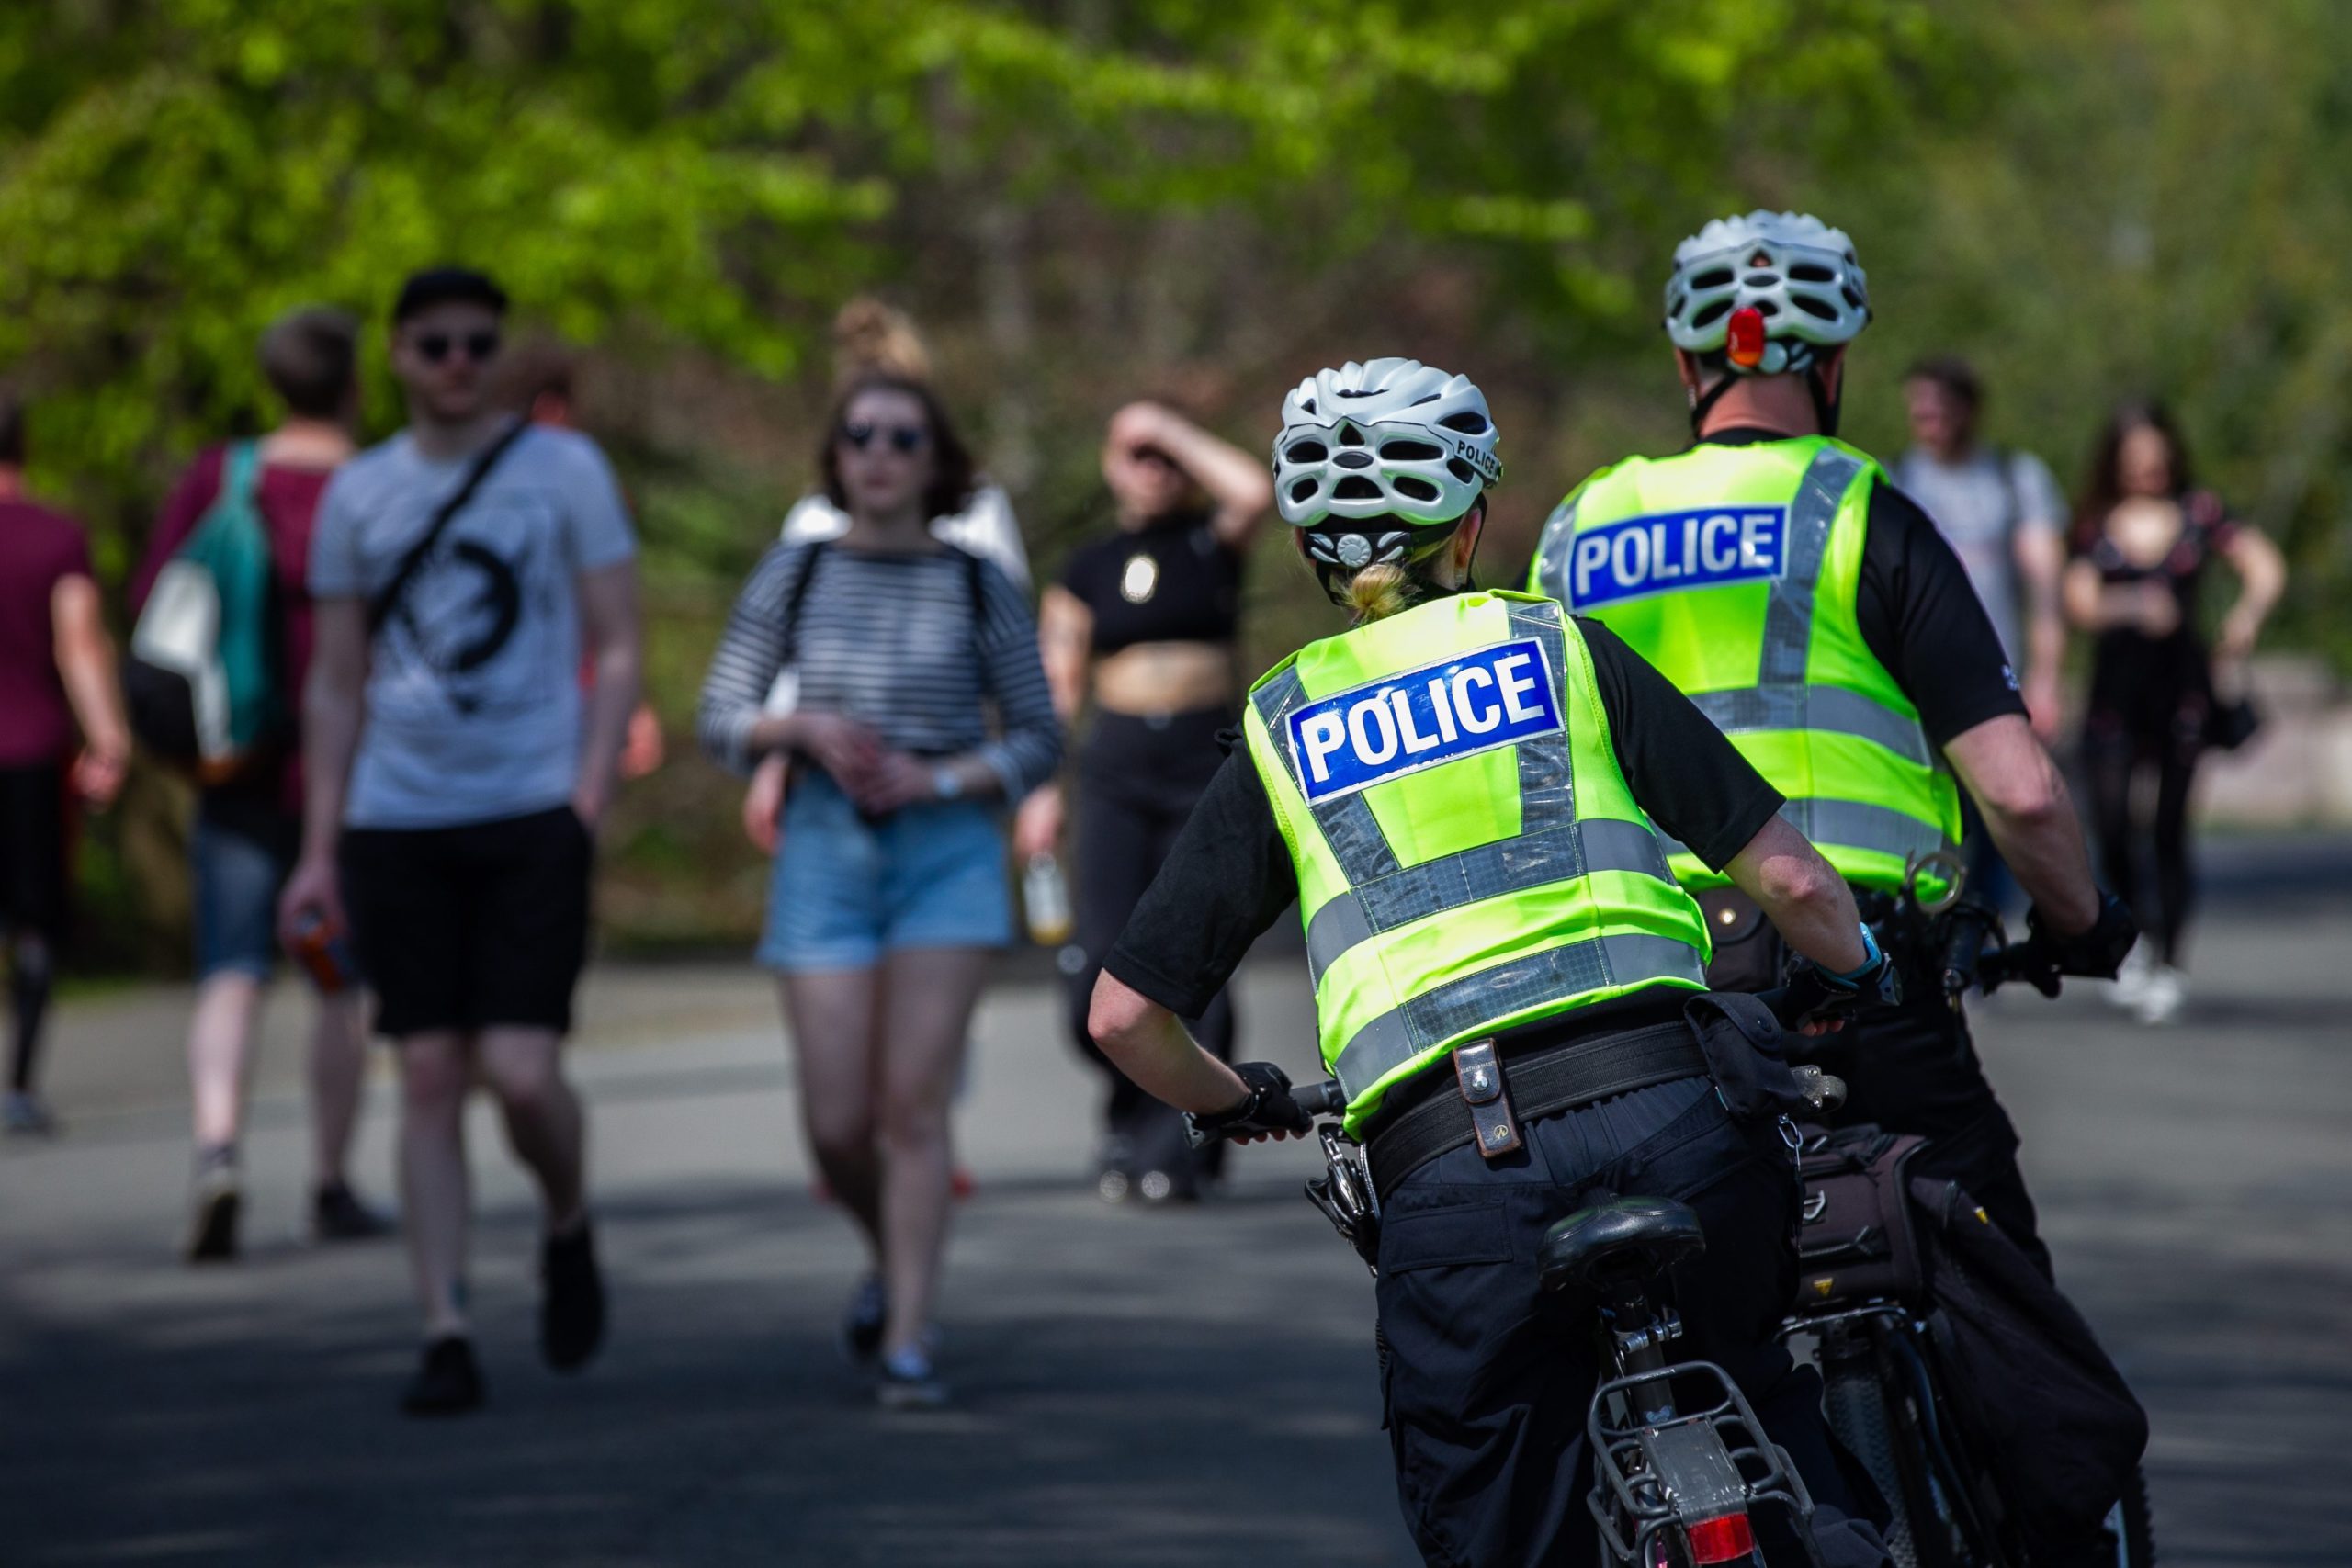 Officers on patrol in Kelvingrove Park yesterday